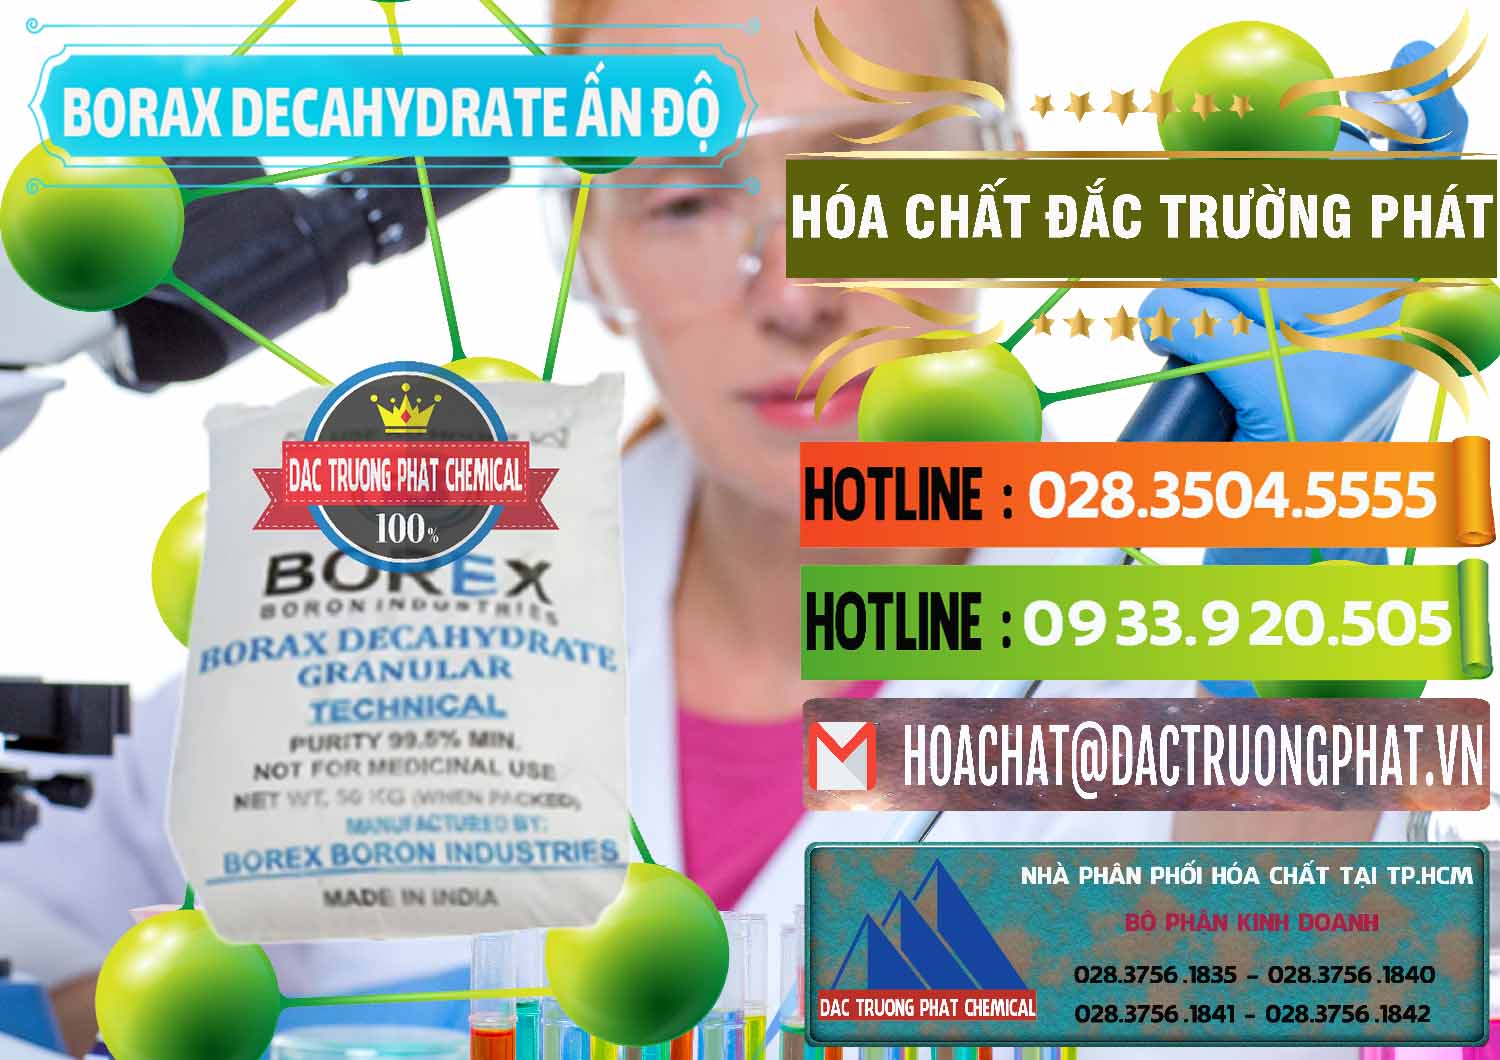 Nơi chuyên kinh doanh & bán Borax Decahydrate Ấn Độ India - 0449 - Nhà phân phối và cung ứng hóa chất tại TP.HCM - cungcaphoachat.com.vn